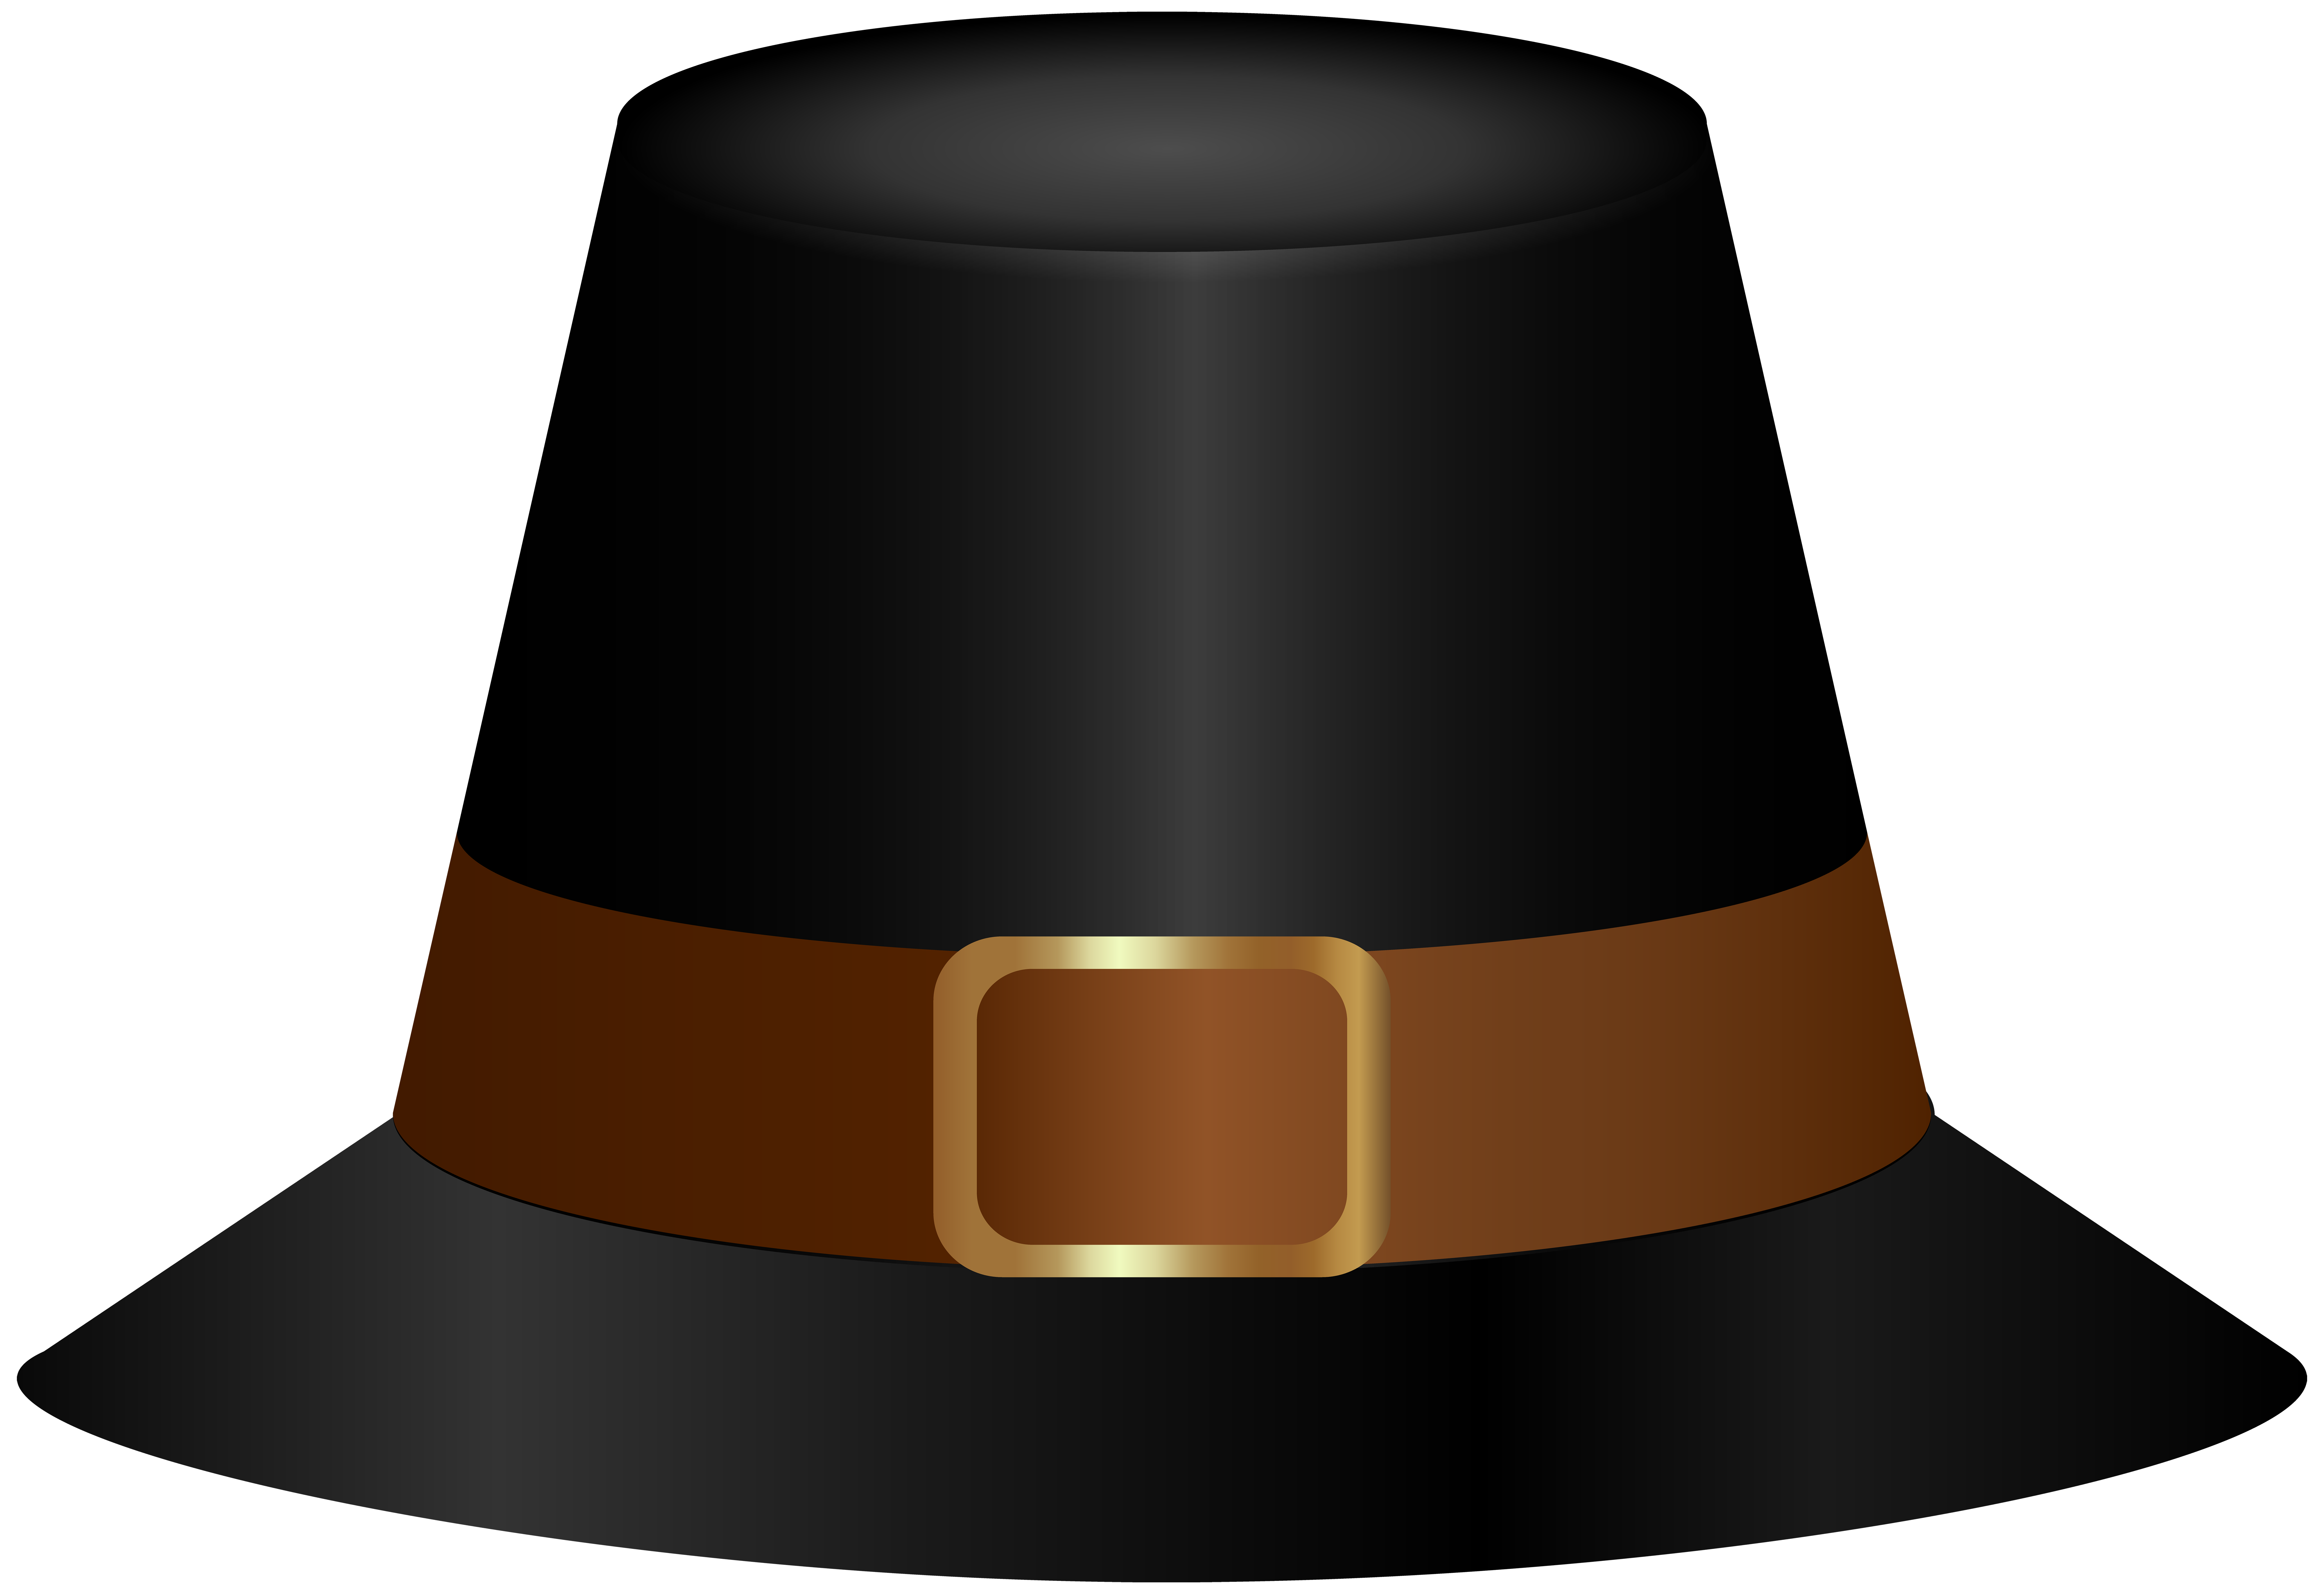 Pilgrim Hat PNG Clipart - Best WEB Clipart